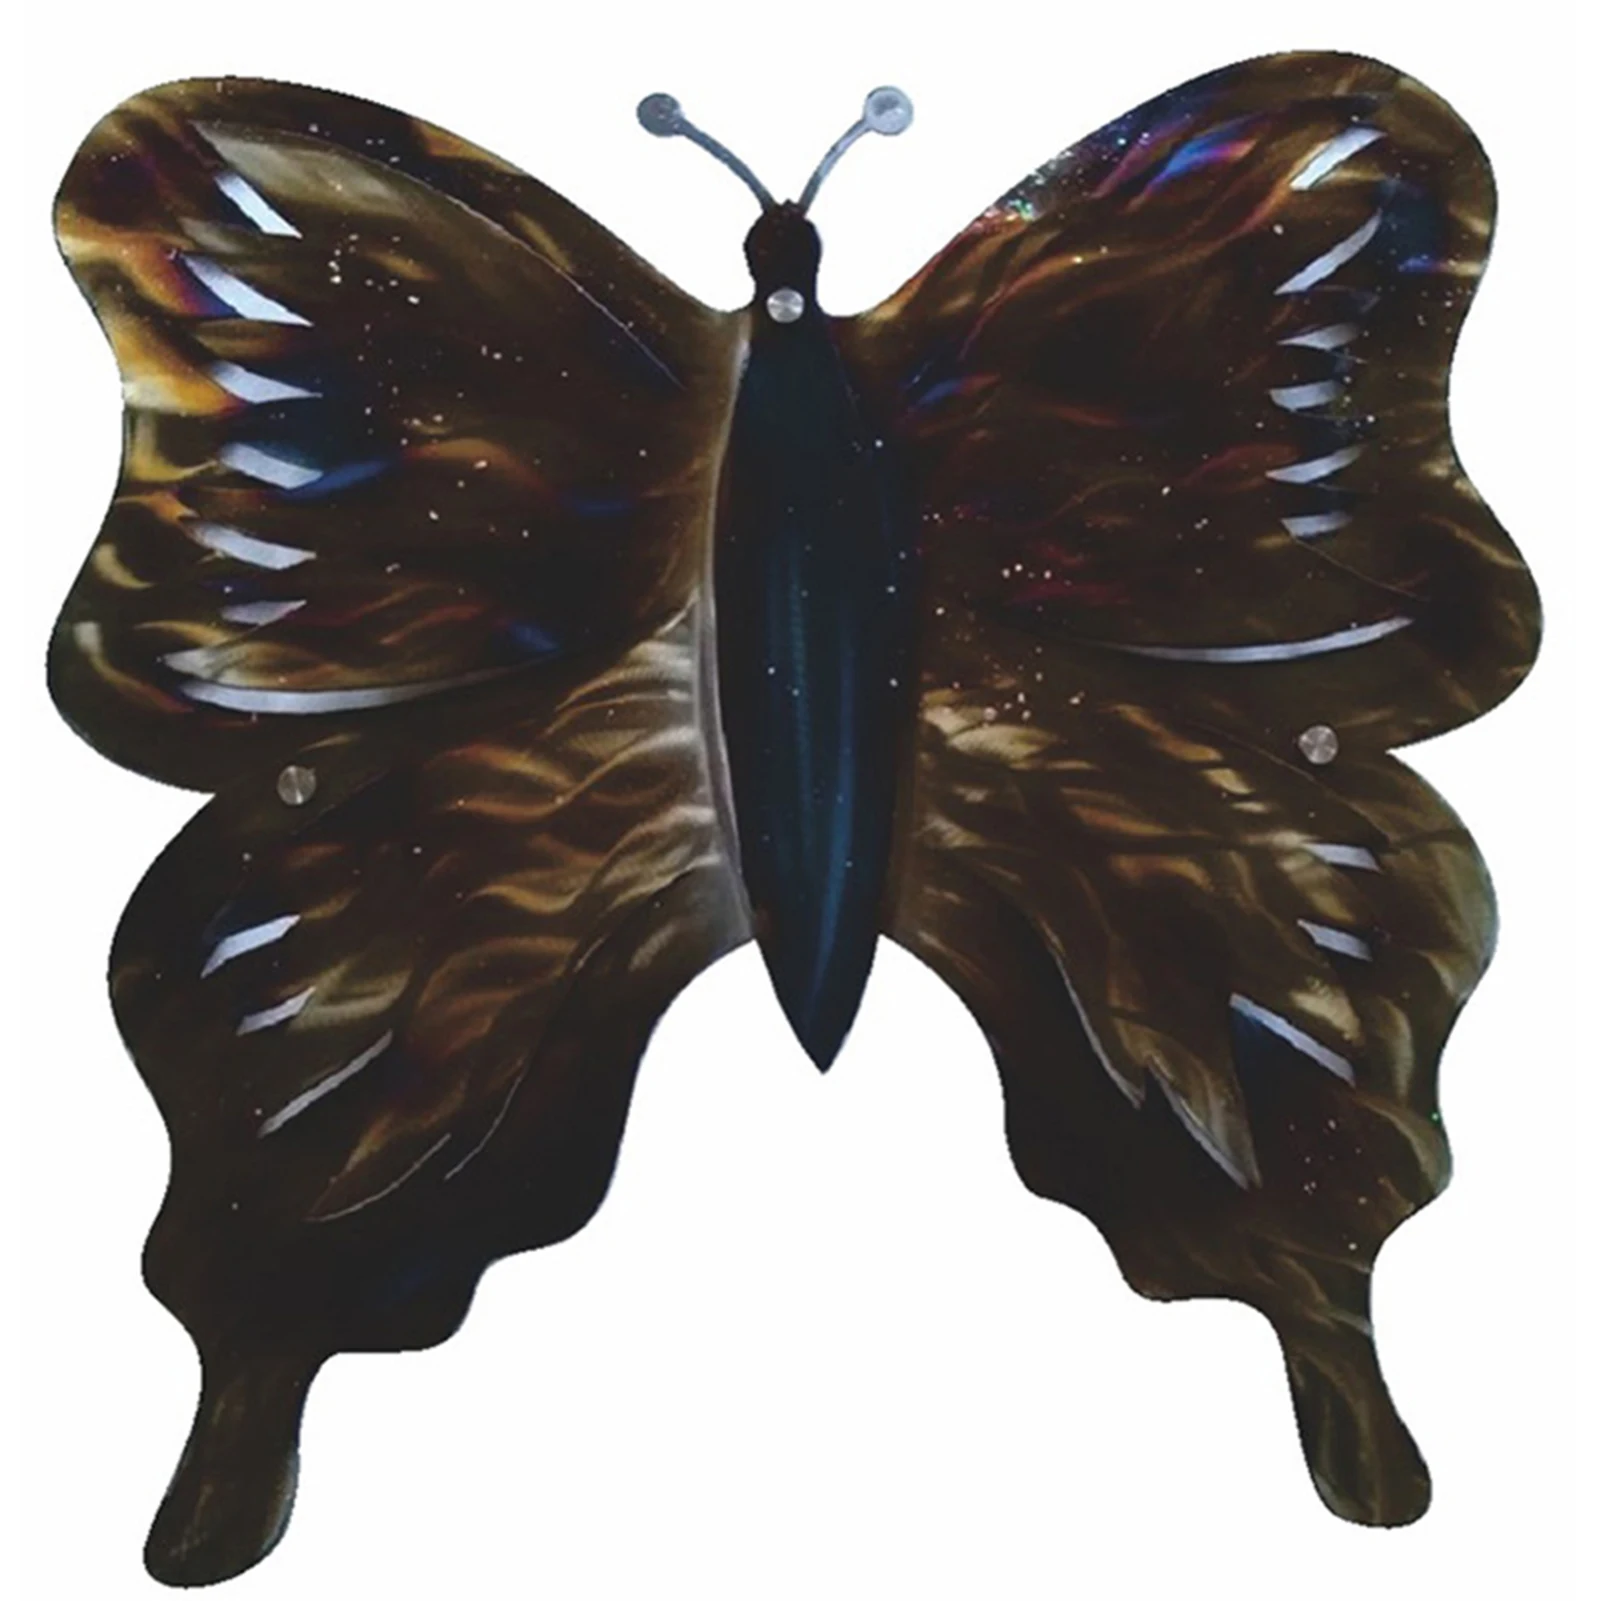 Trang trí bướm sắc màu lớn bằng kim loại để treo tường vườn - điểm nhấn hoàn hảo cho không gian sống. Với màu sắc đa dạng và kiểu dáng độc đáo, chiếc bướm này sẽ mang lại sự tươi mới và sinh động cho mọi không gian.